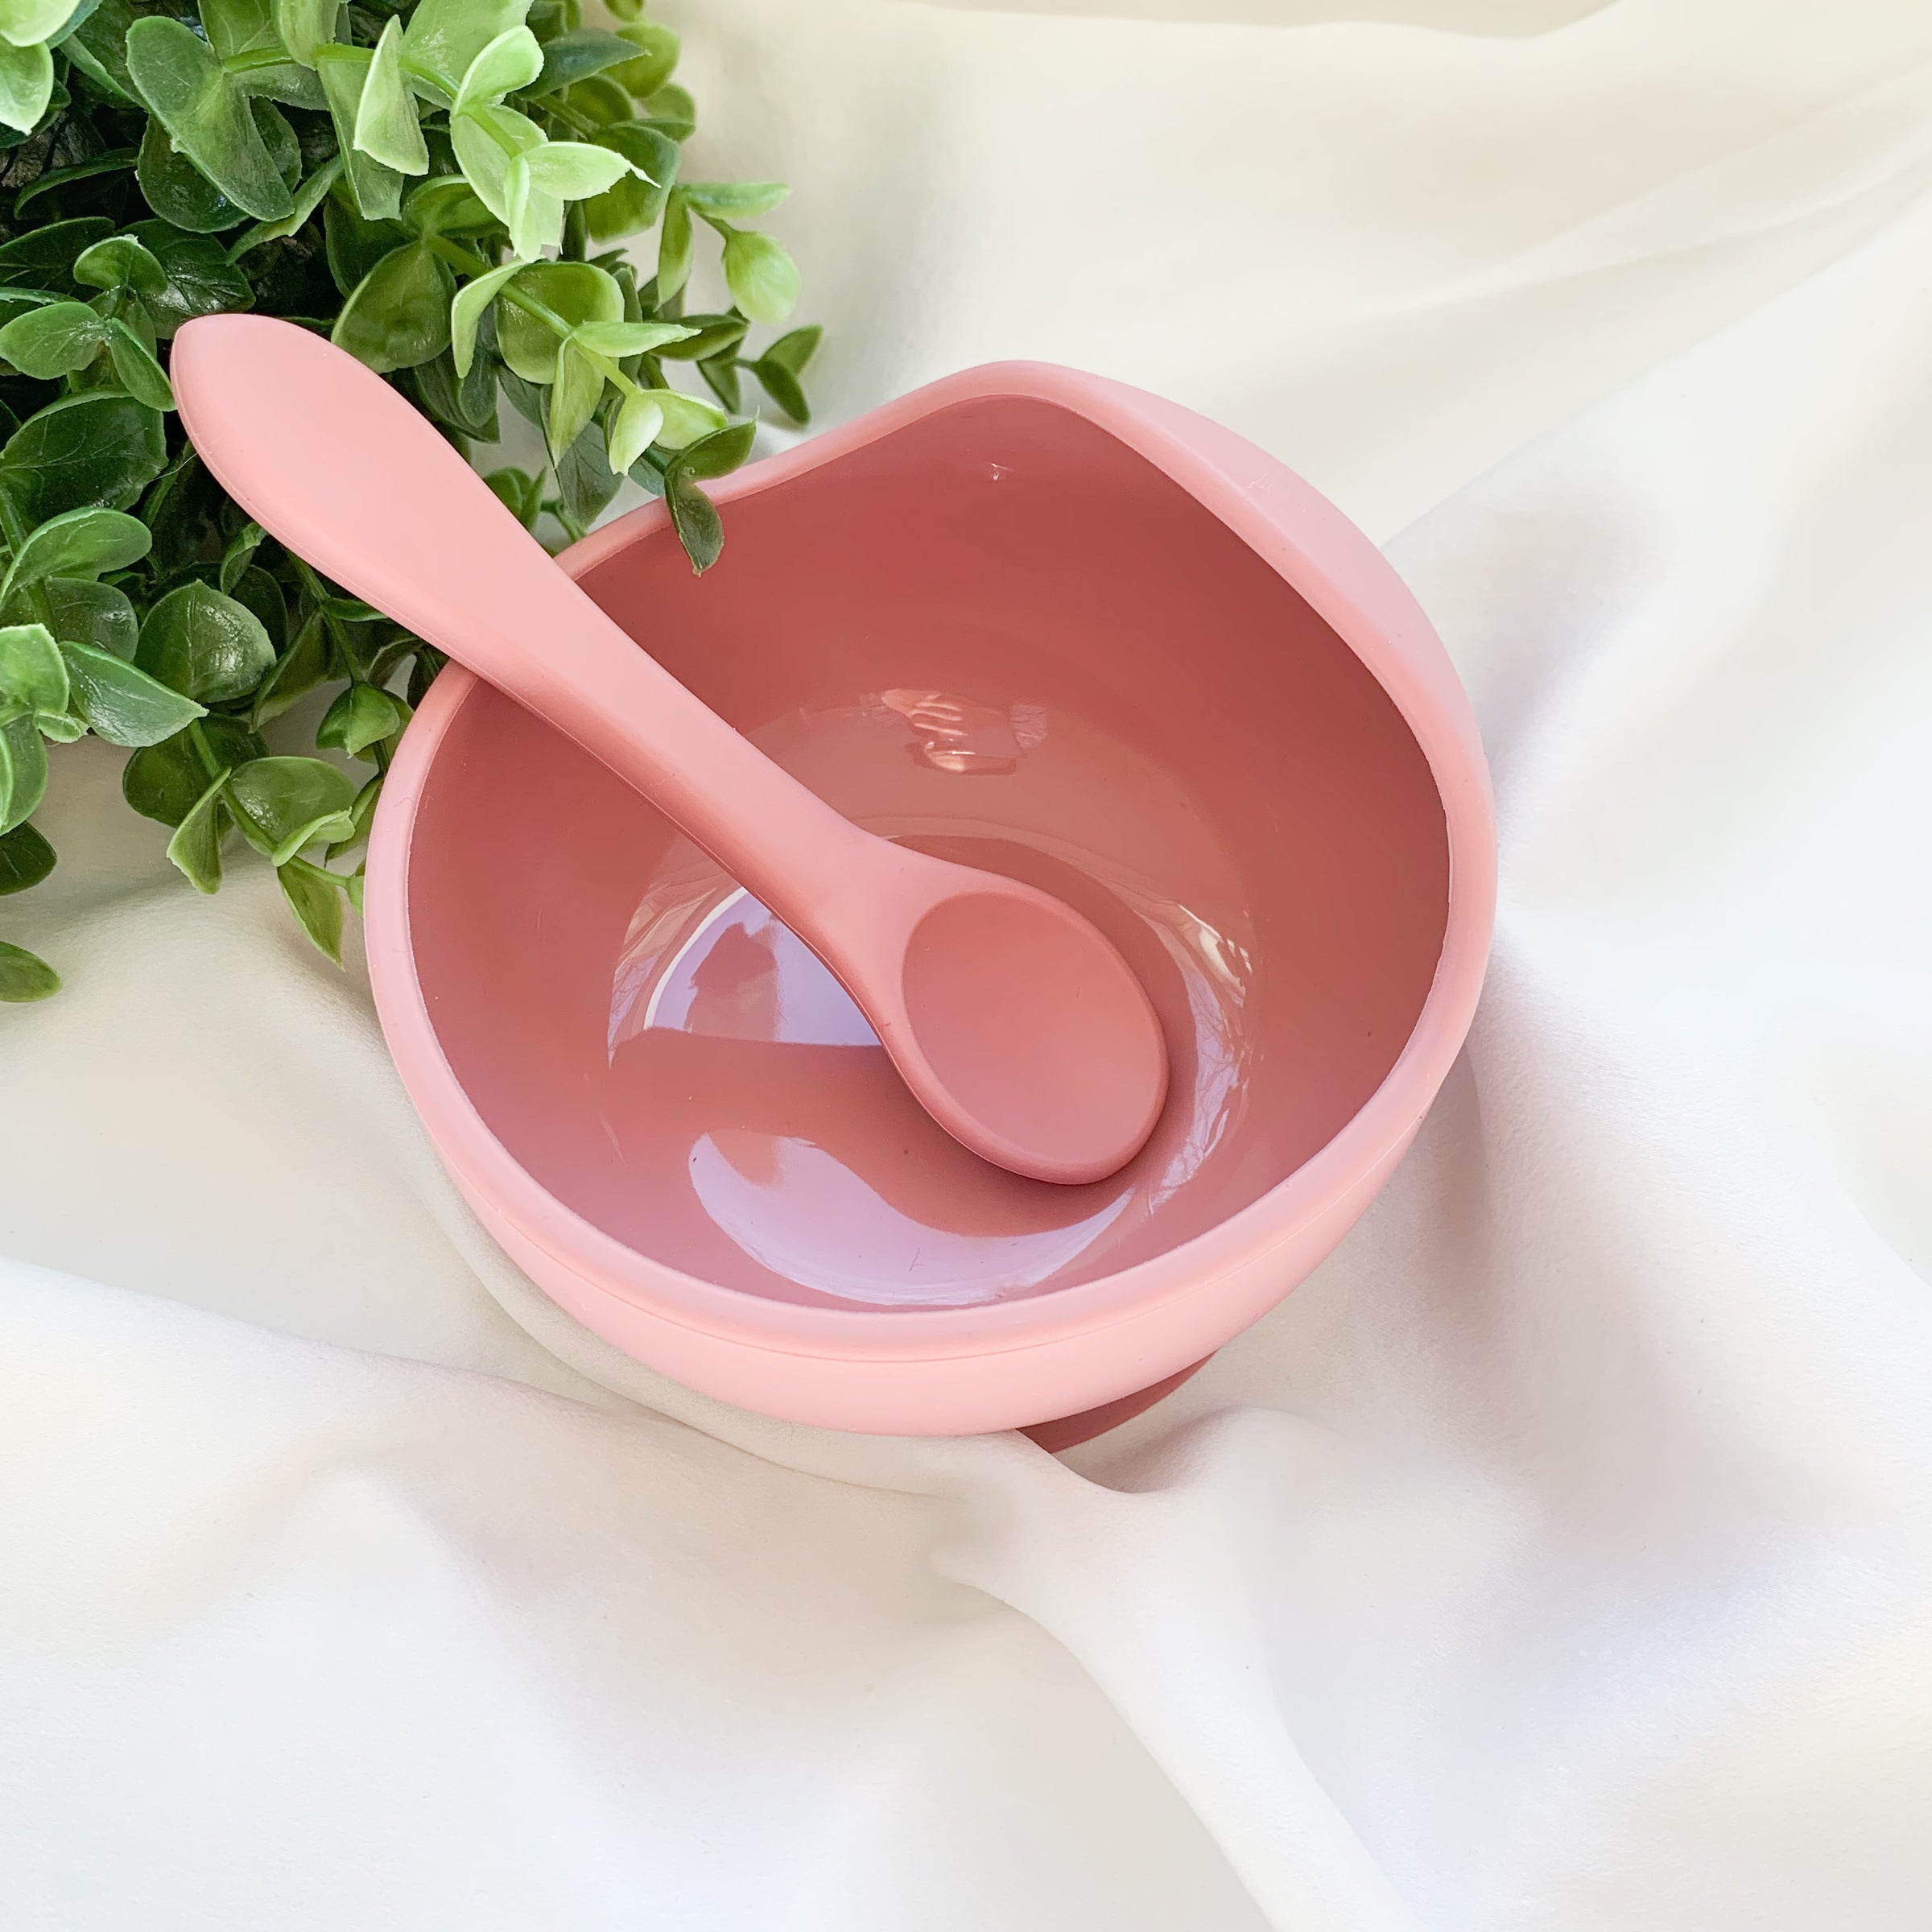 Baby Suction Bowl and Spoon Set - Sage, Simka Rose